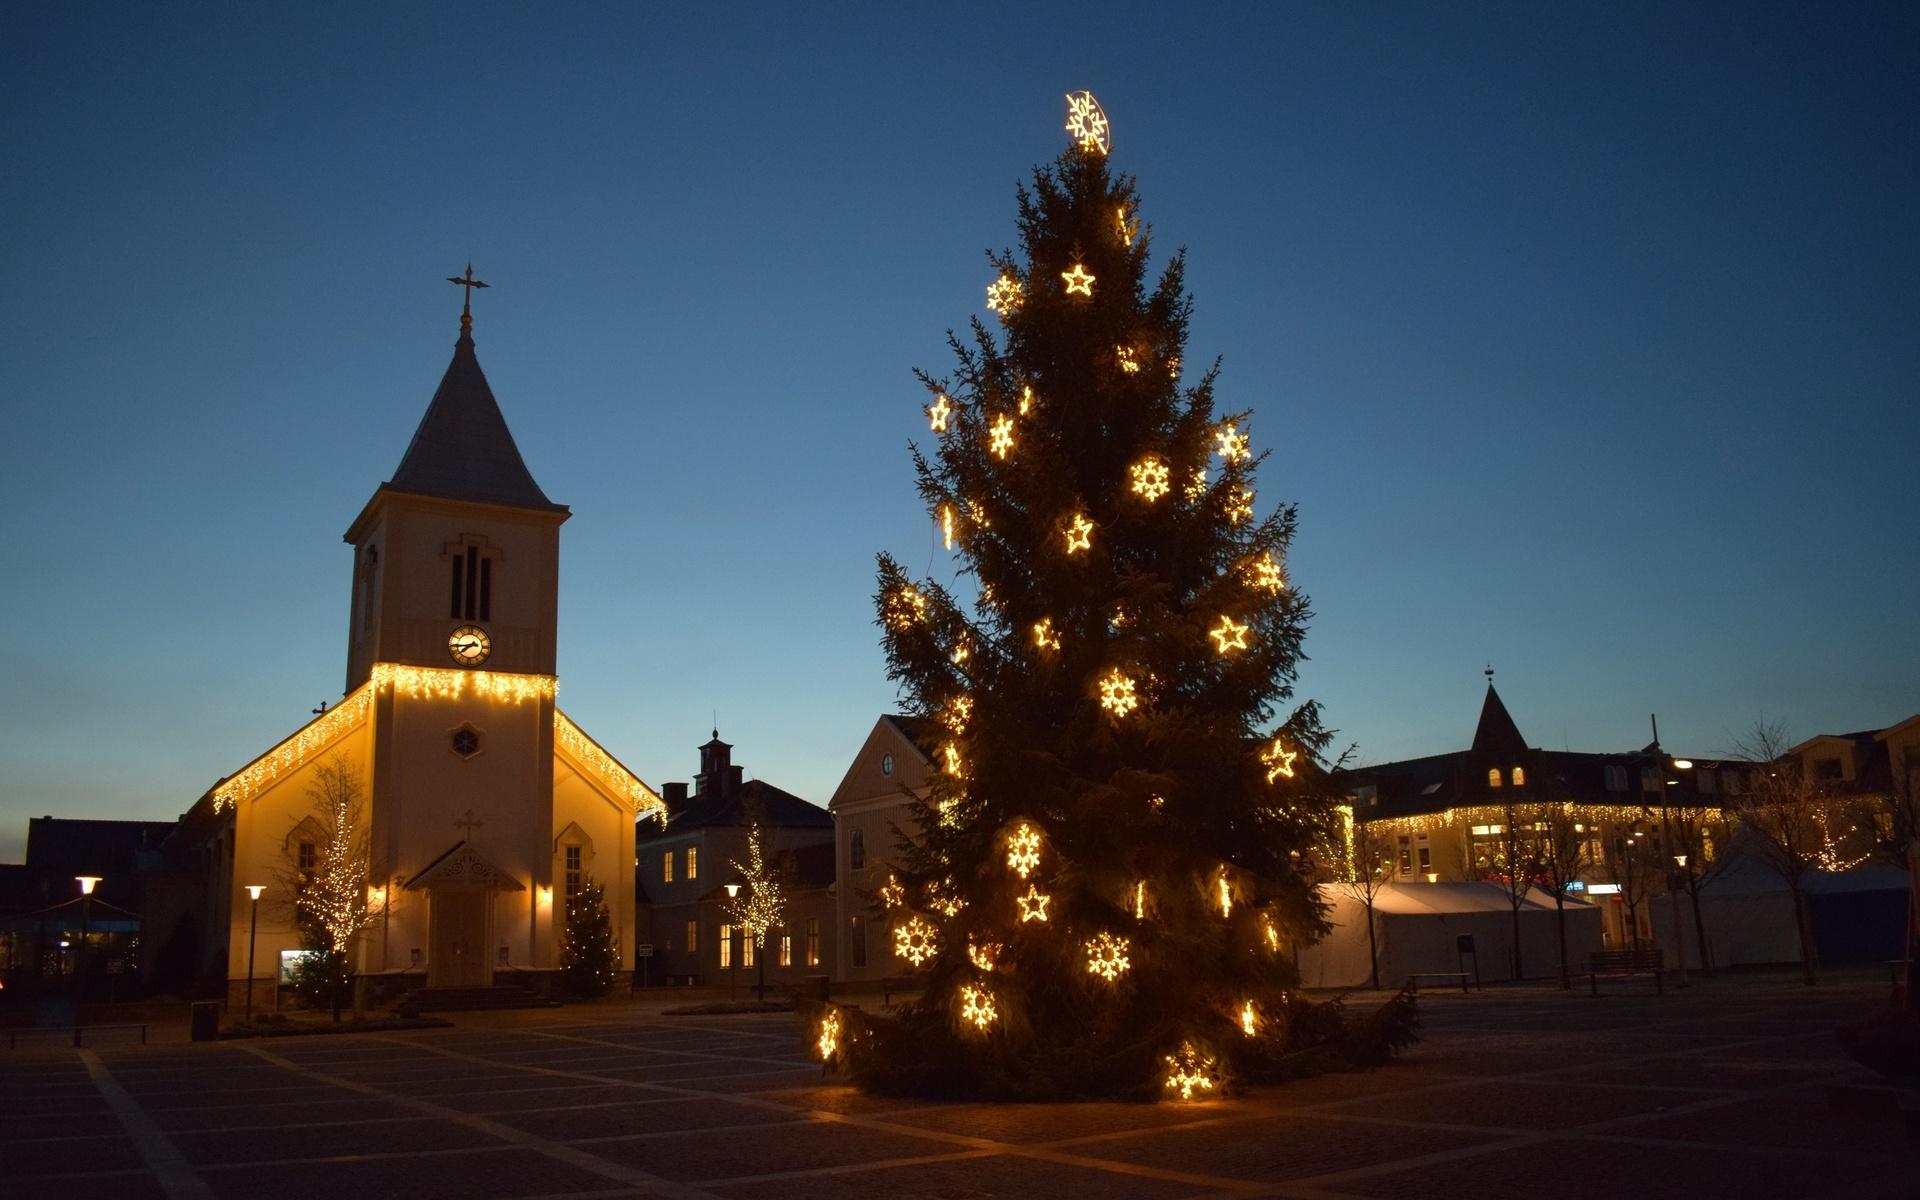 2019 var julgranen på torget utsmyckad med flera stjärnor.